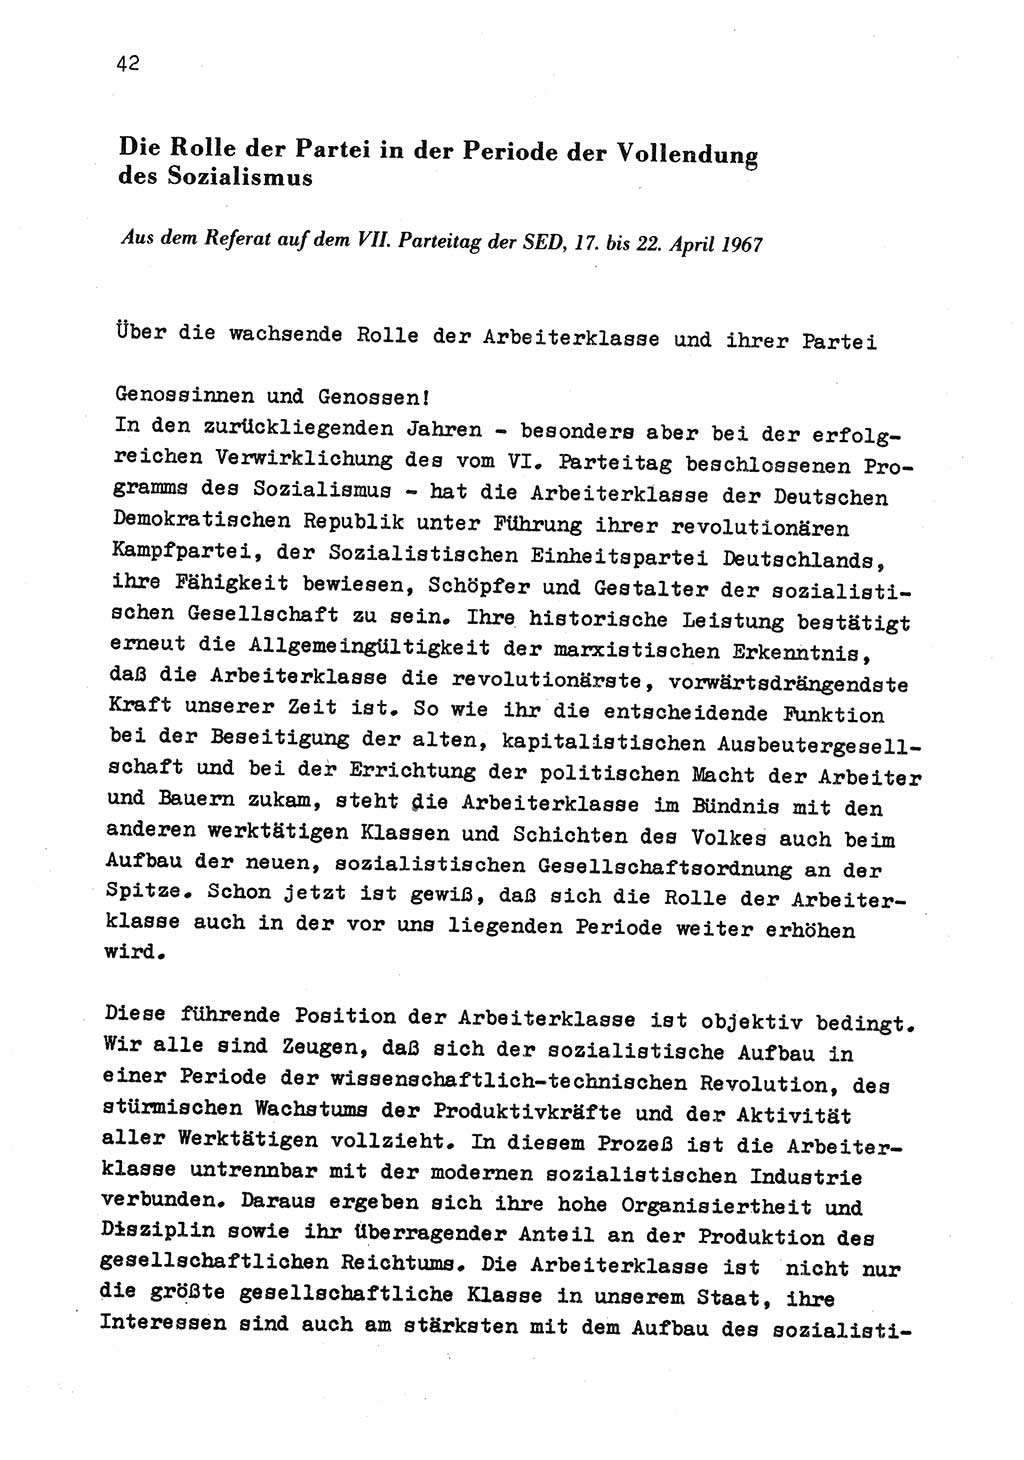 Zu Fragen der Parteiarbeit [Sozialistische Einheitspartei Deutschlands (SED) Deutsche Demokratische Republik (DDR)] 1979, Seite 42 (Fr. PA SED DDR 1979, S. 42)